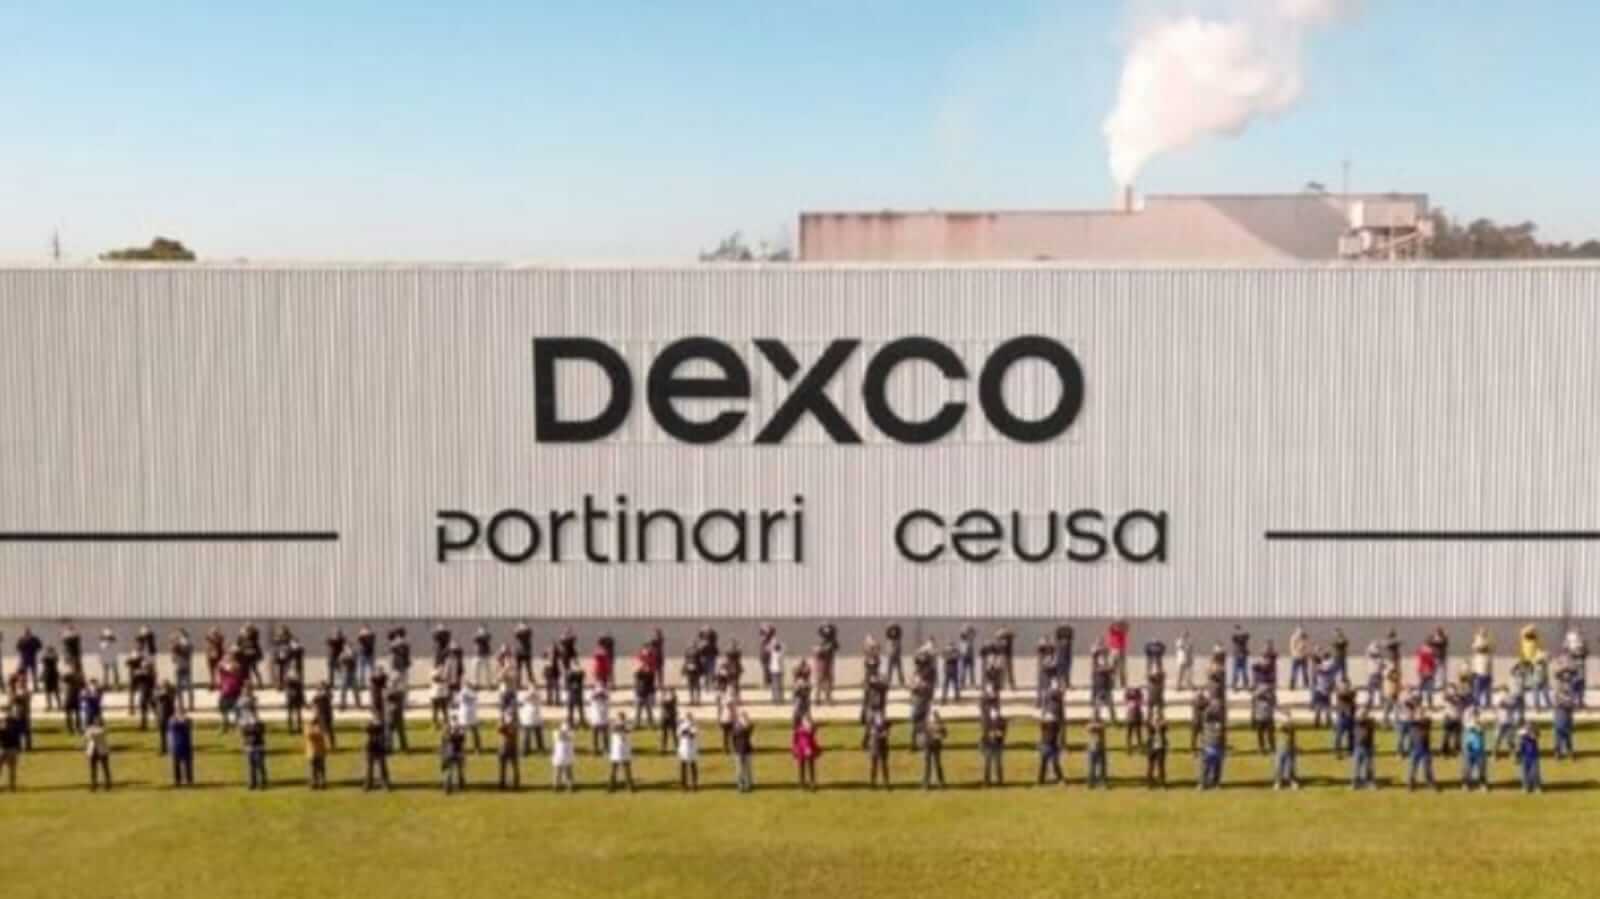 Fachada da empresa Dexco com funcionários em linha no gramado